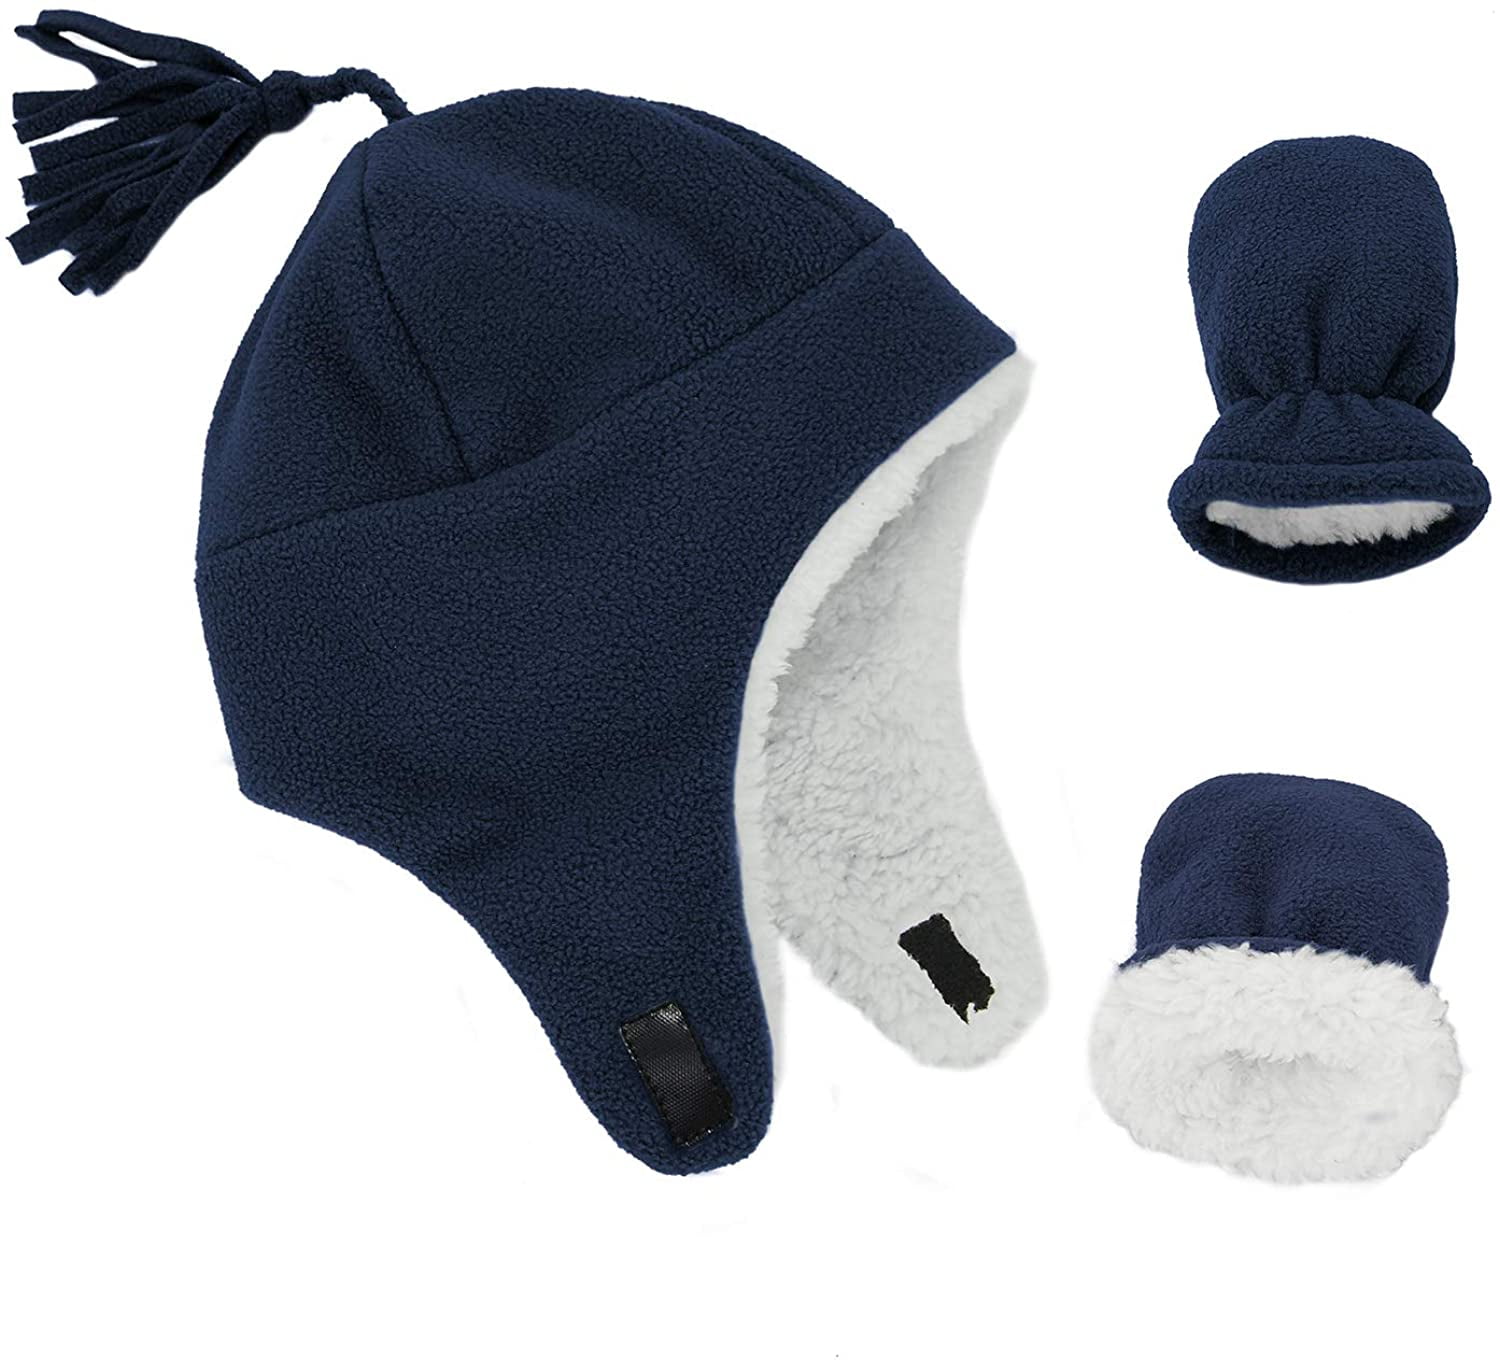 Zando Toddler Winter Hats and Gloves Sets for Boys Warm Polar Fleece ...